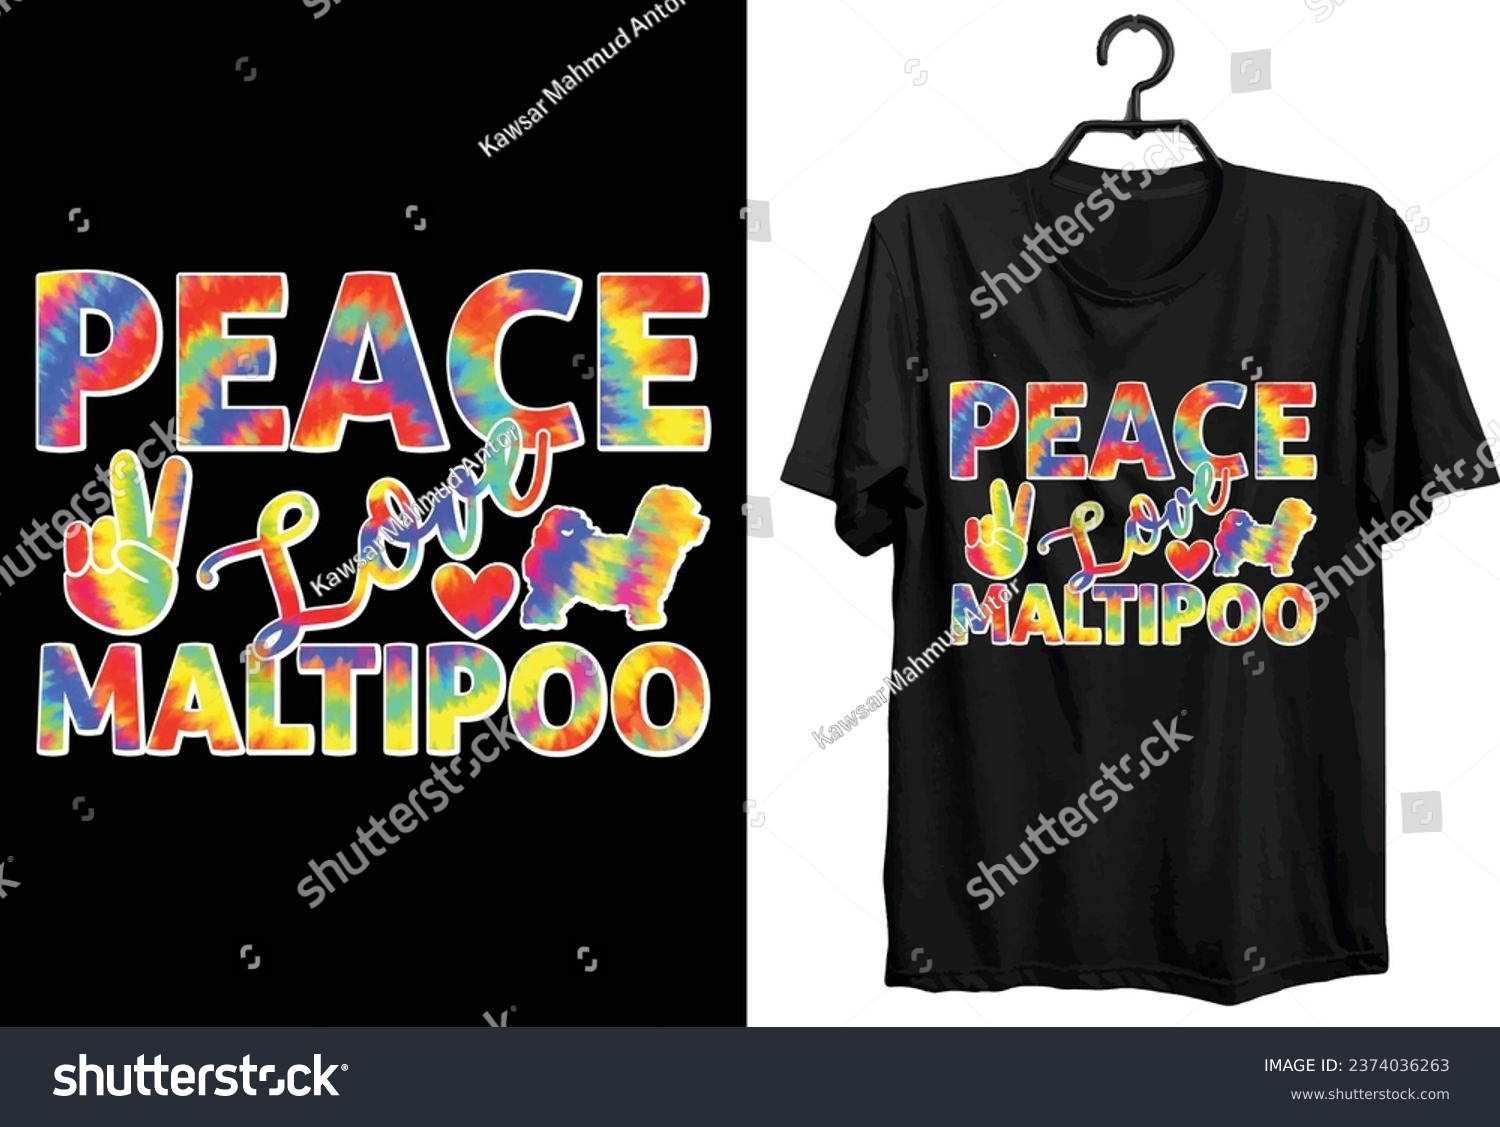 SVG of Maltipoo Dog T-shirt Design. Funny Gift Item Maltipoo Dog T-shirt Design For Dog Lovers And People. svg